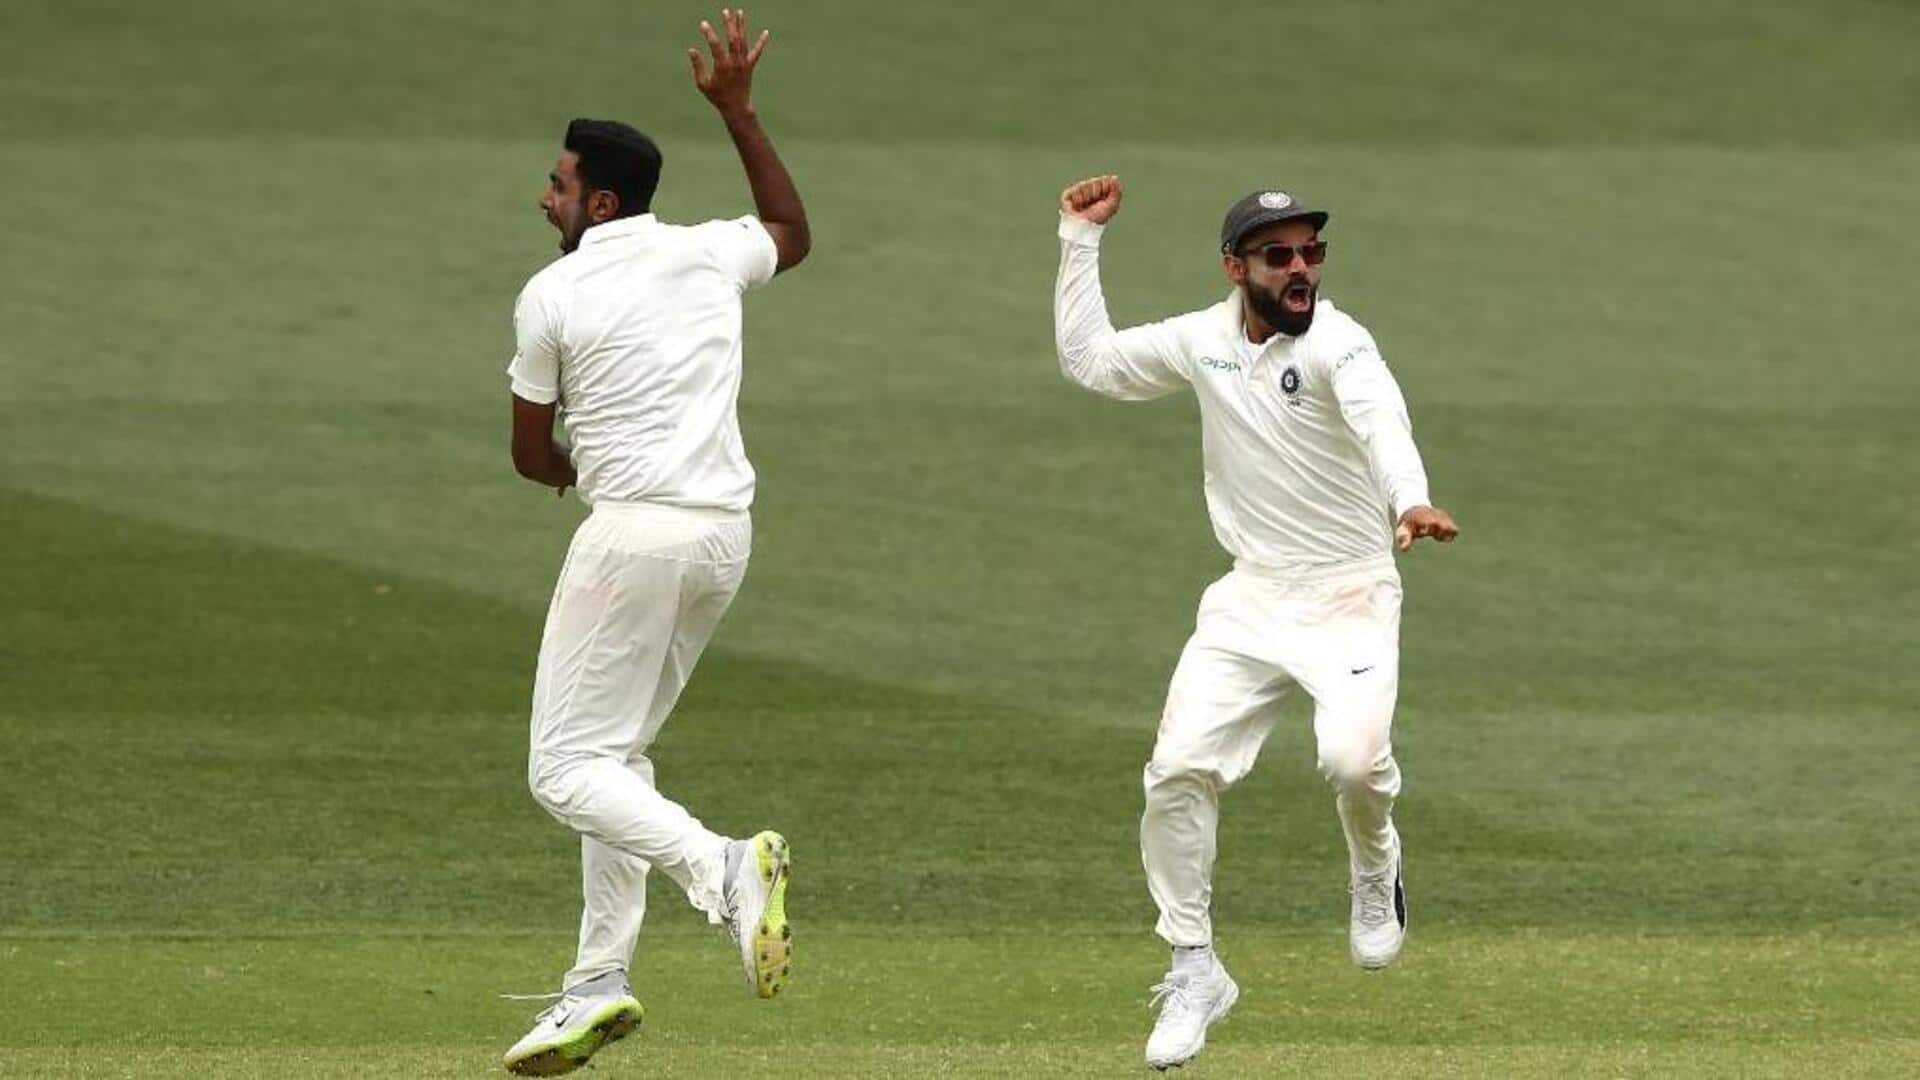 भारत बनाम इंग्लैंड, दूसरा टेस्ट: विशाखापटनम में कैसा रहा है दोनों टीमों का प्रदर्शन? जानिए आंकड़े